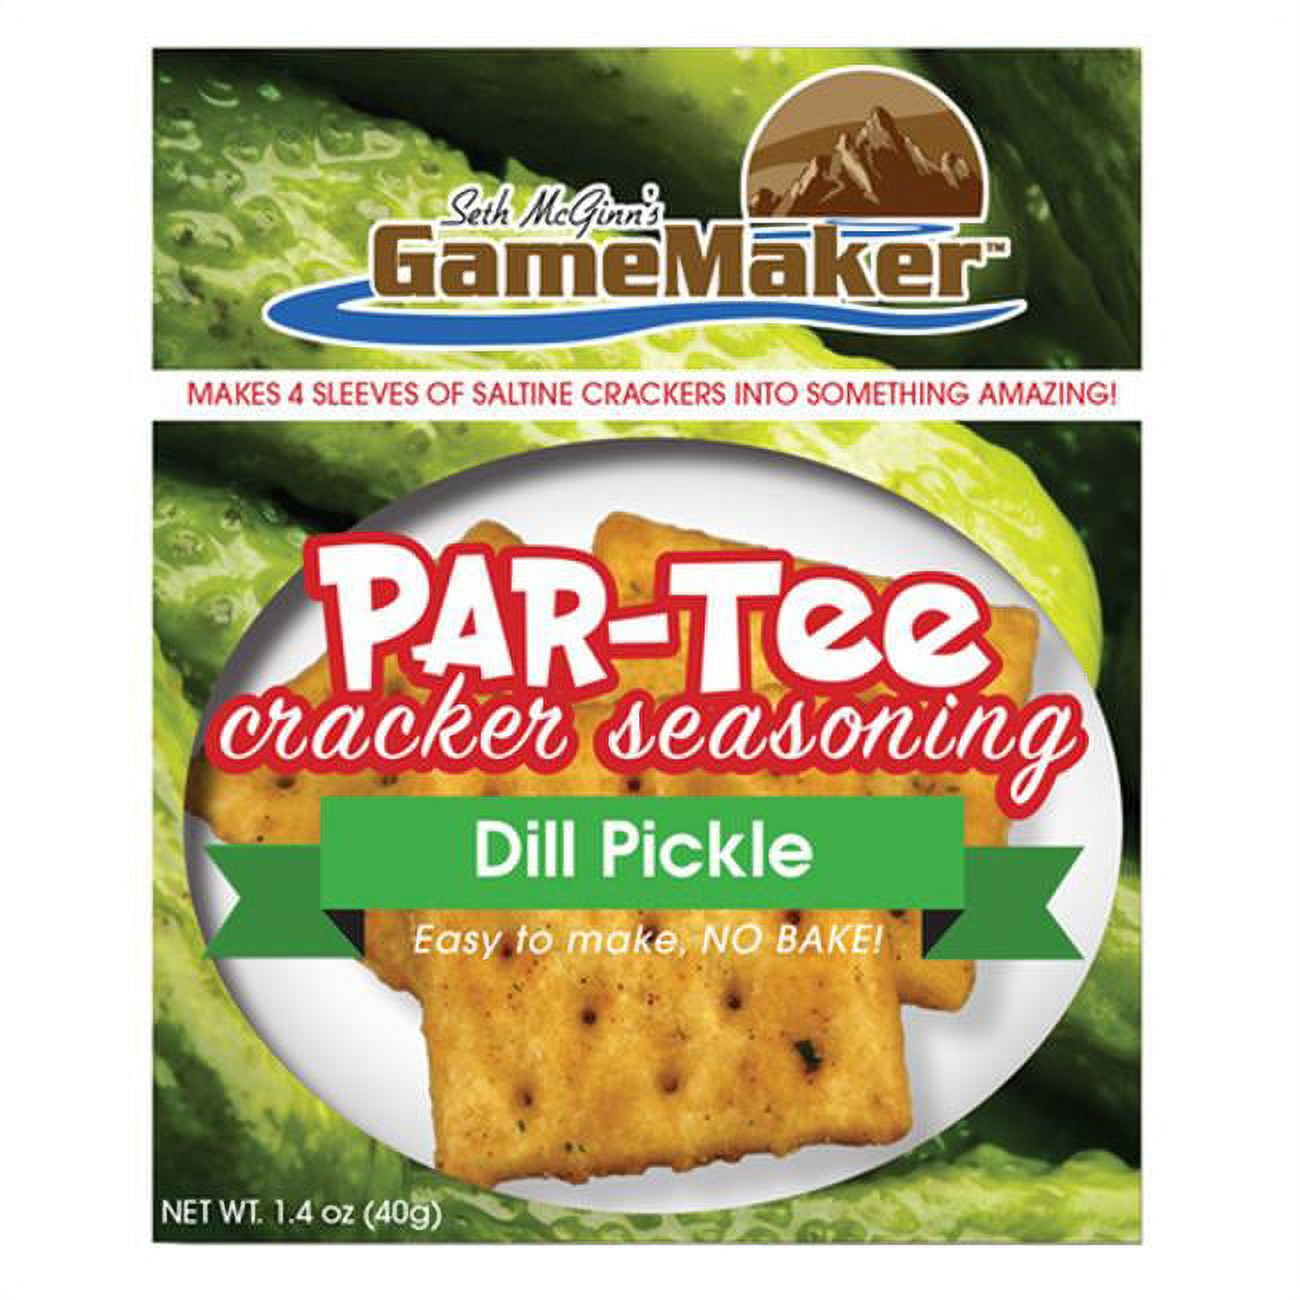 Dp1240 Gamemaker Par-tee, Dill Pickle